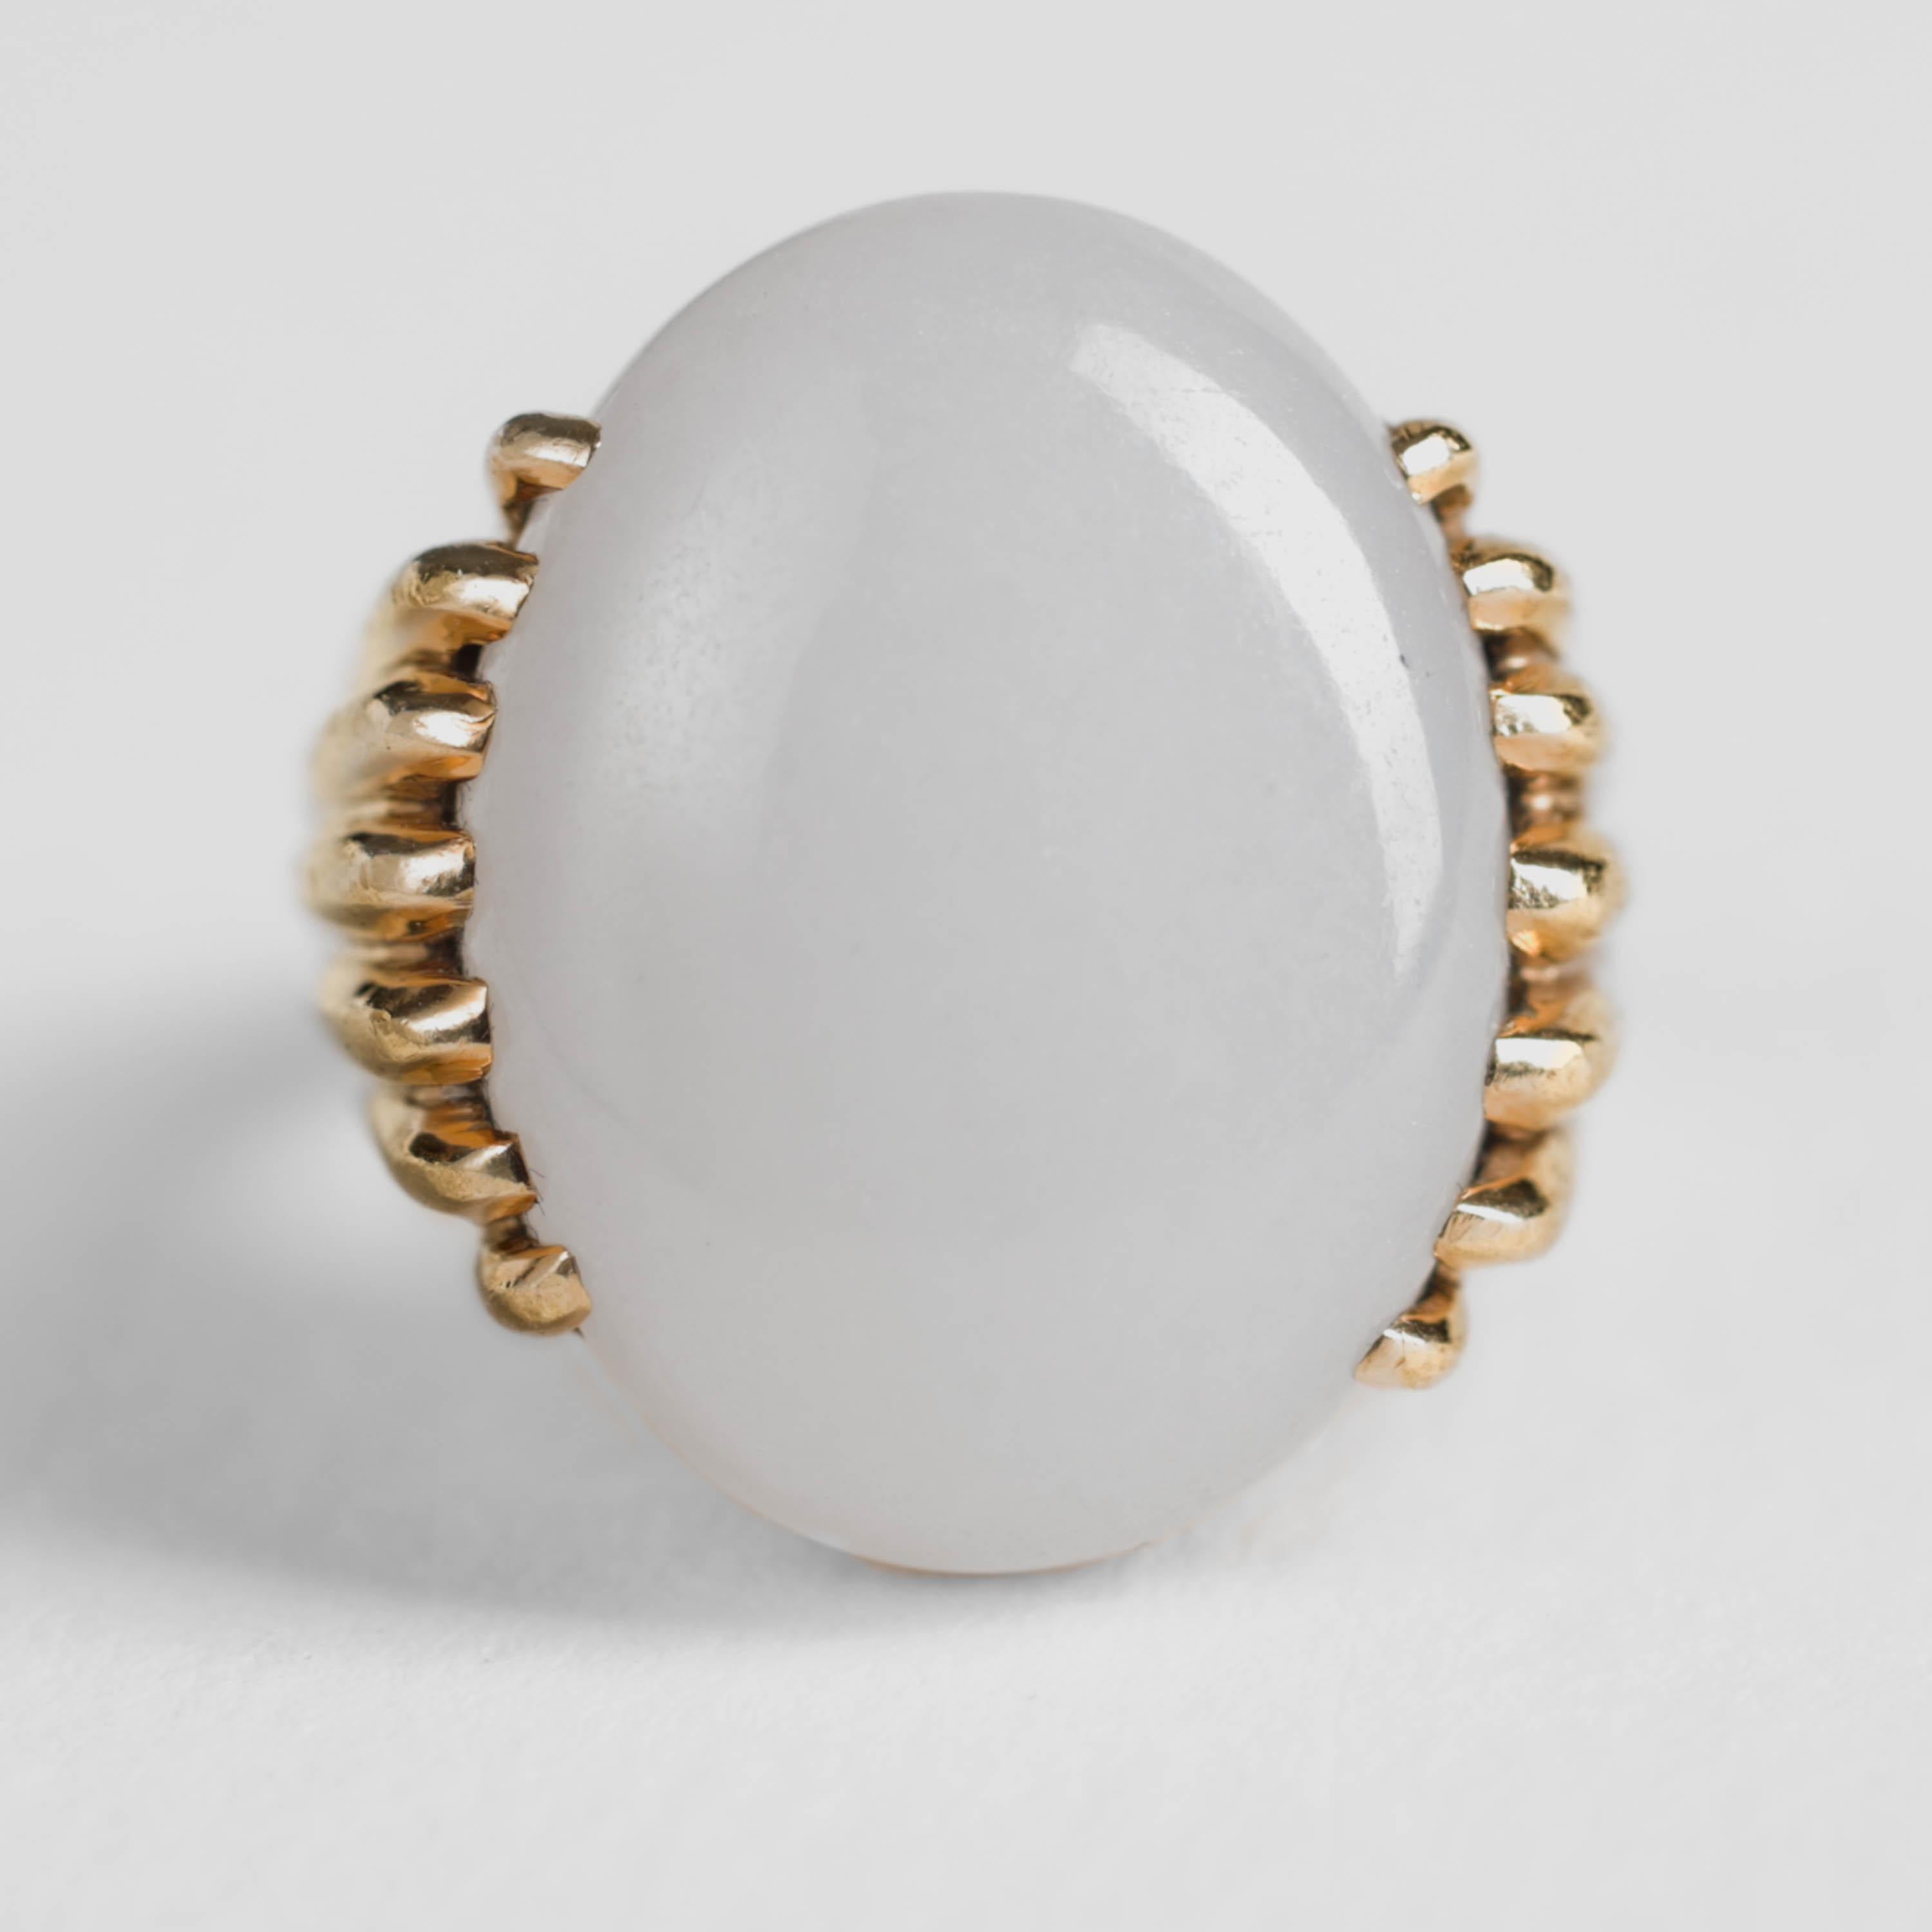 Dieser äußerst seltene Ring von Gump's San Francisco ist ein Unisex-Ring mit einem ovalen Cabochon aus natürlicher und unbehandelter weißer Jade in einer handgefertigten Fassung aus 18 Karat Gelbgold. 

Das ursprüngliche Gump's in San Francisco war